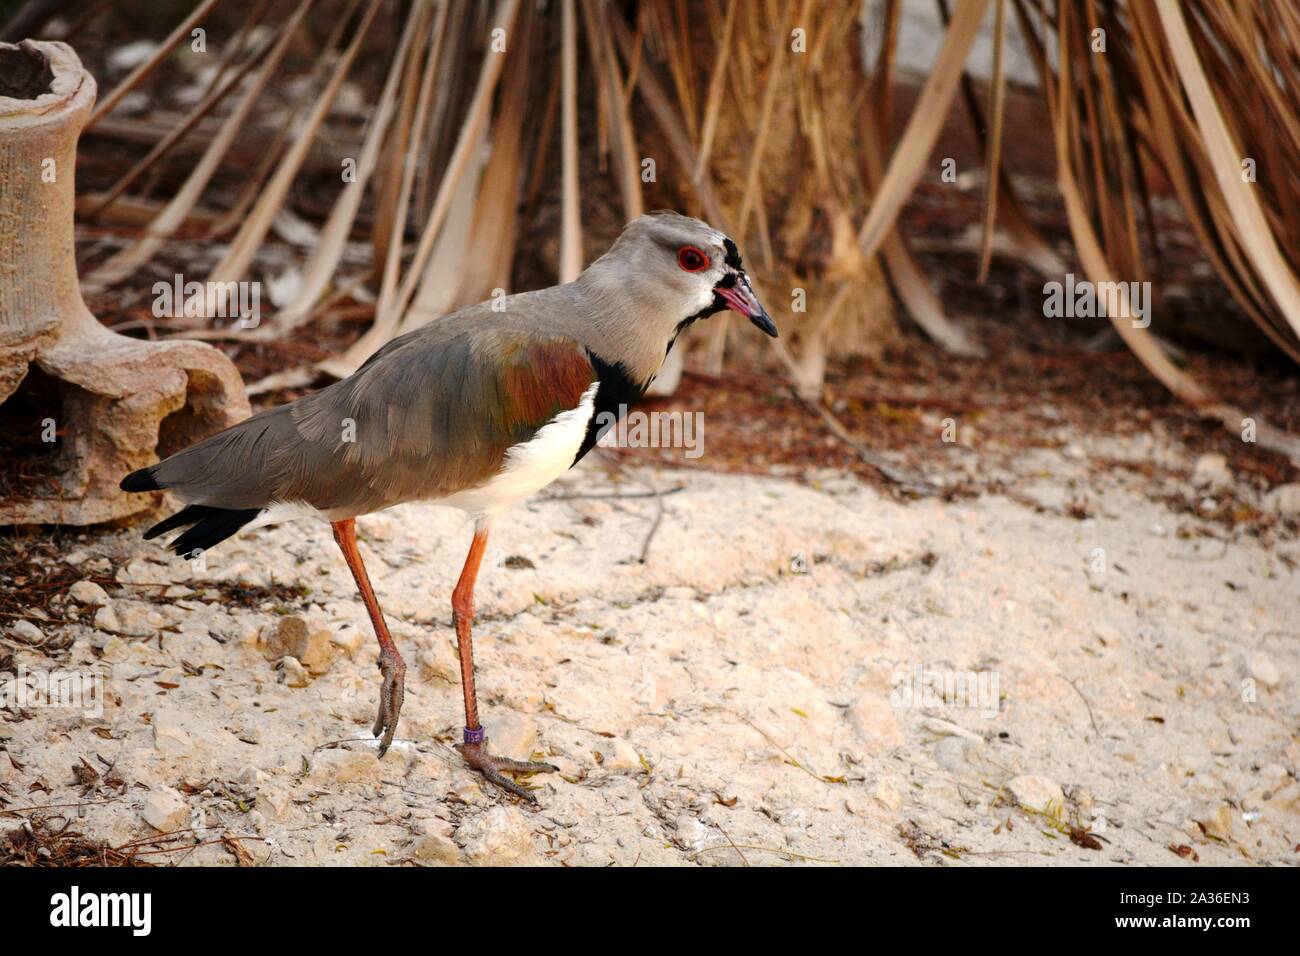 Un oiseau avec de longues jambes de marcher dans le sable Banque D'Images